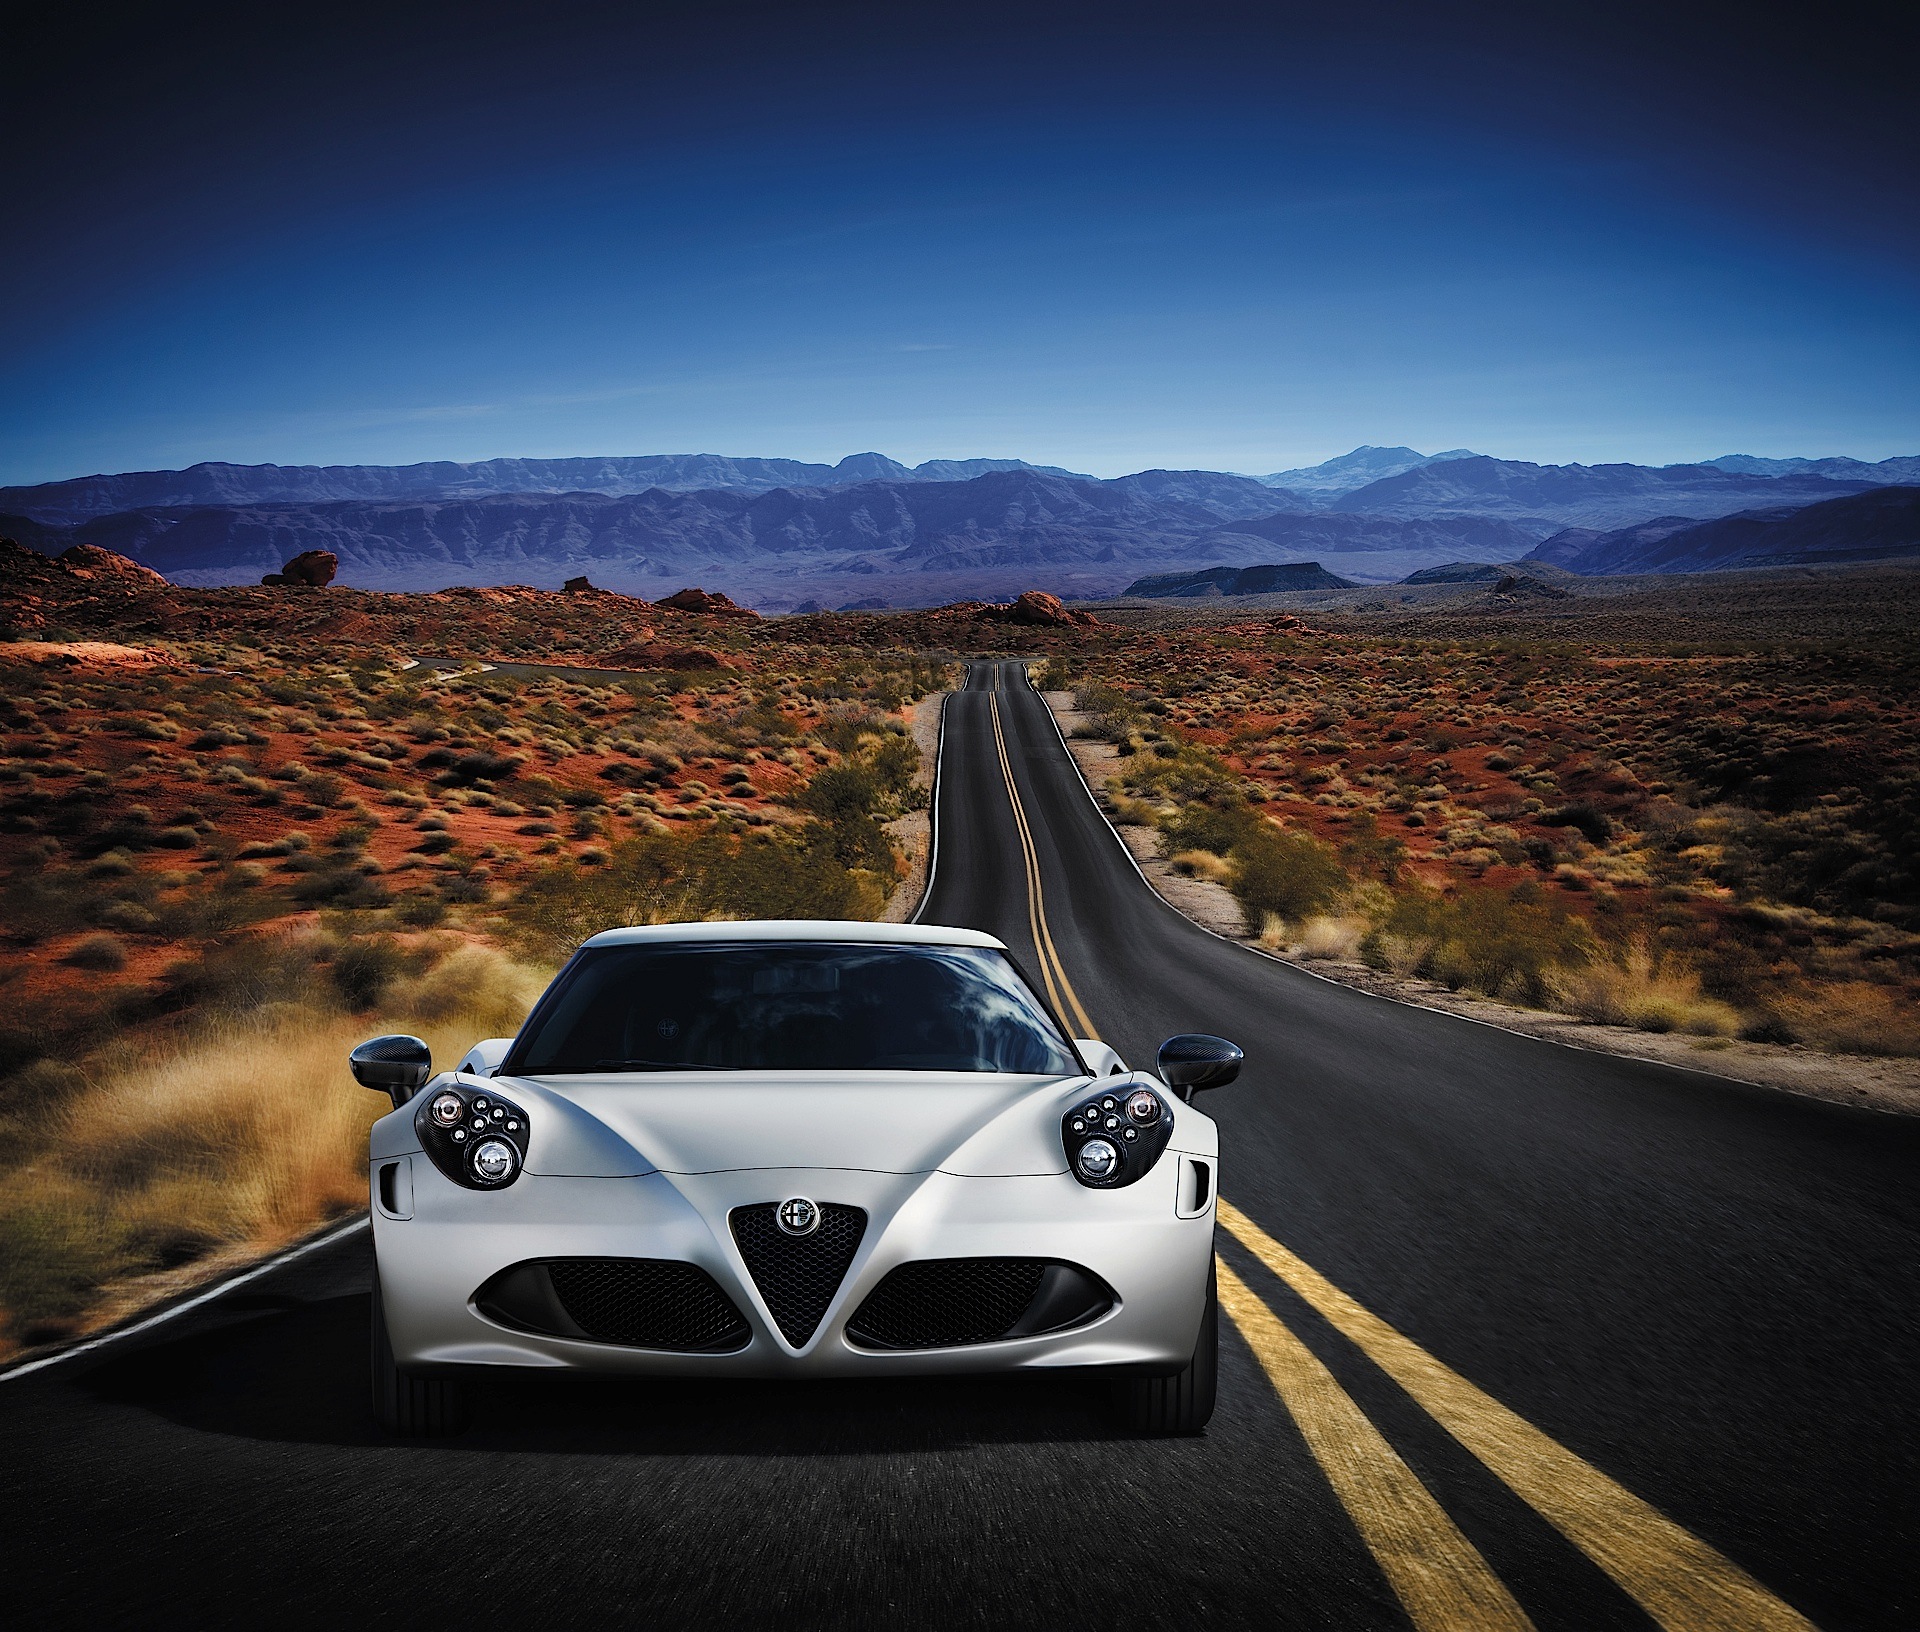 Alfa Romeo's Renaissance: From Tradition to Innovation